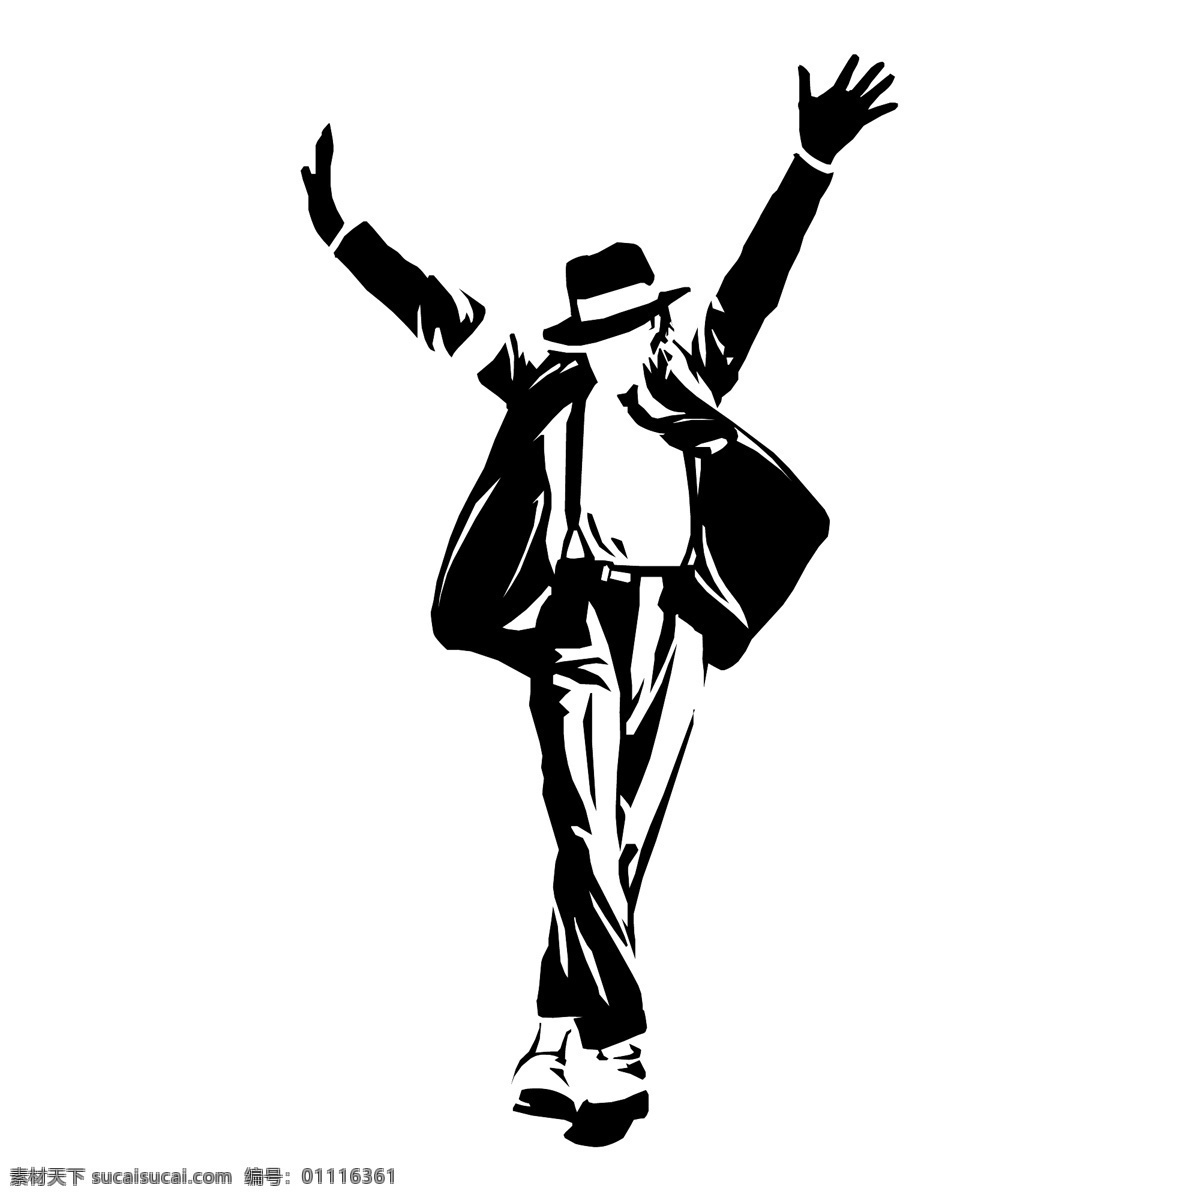 迈克尔杰克逊 漫画 剪影 迈克素材 迈克剪影 跳舞 舞蹈剪影 漫画人物 动漫动画 动漫人物